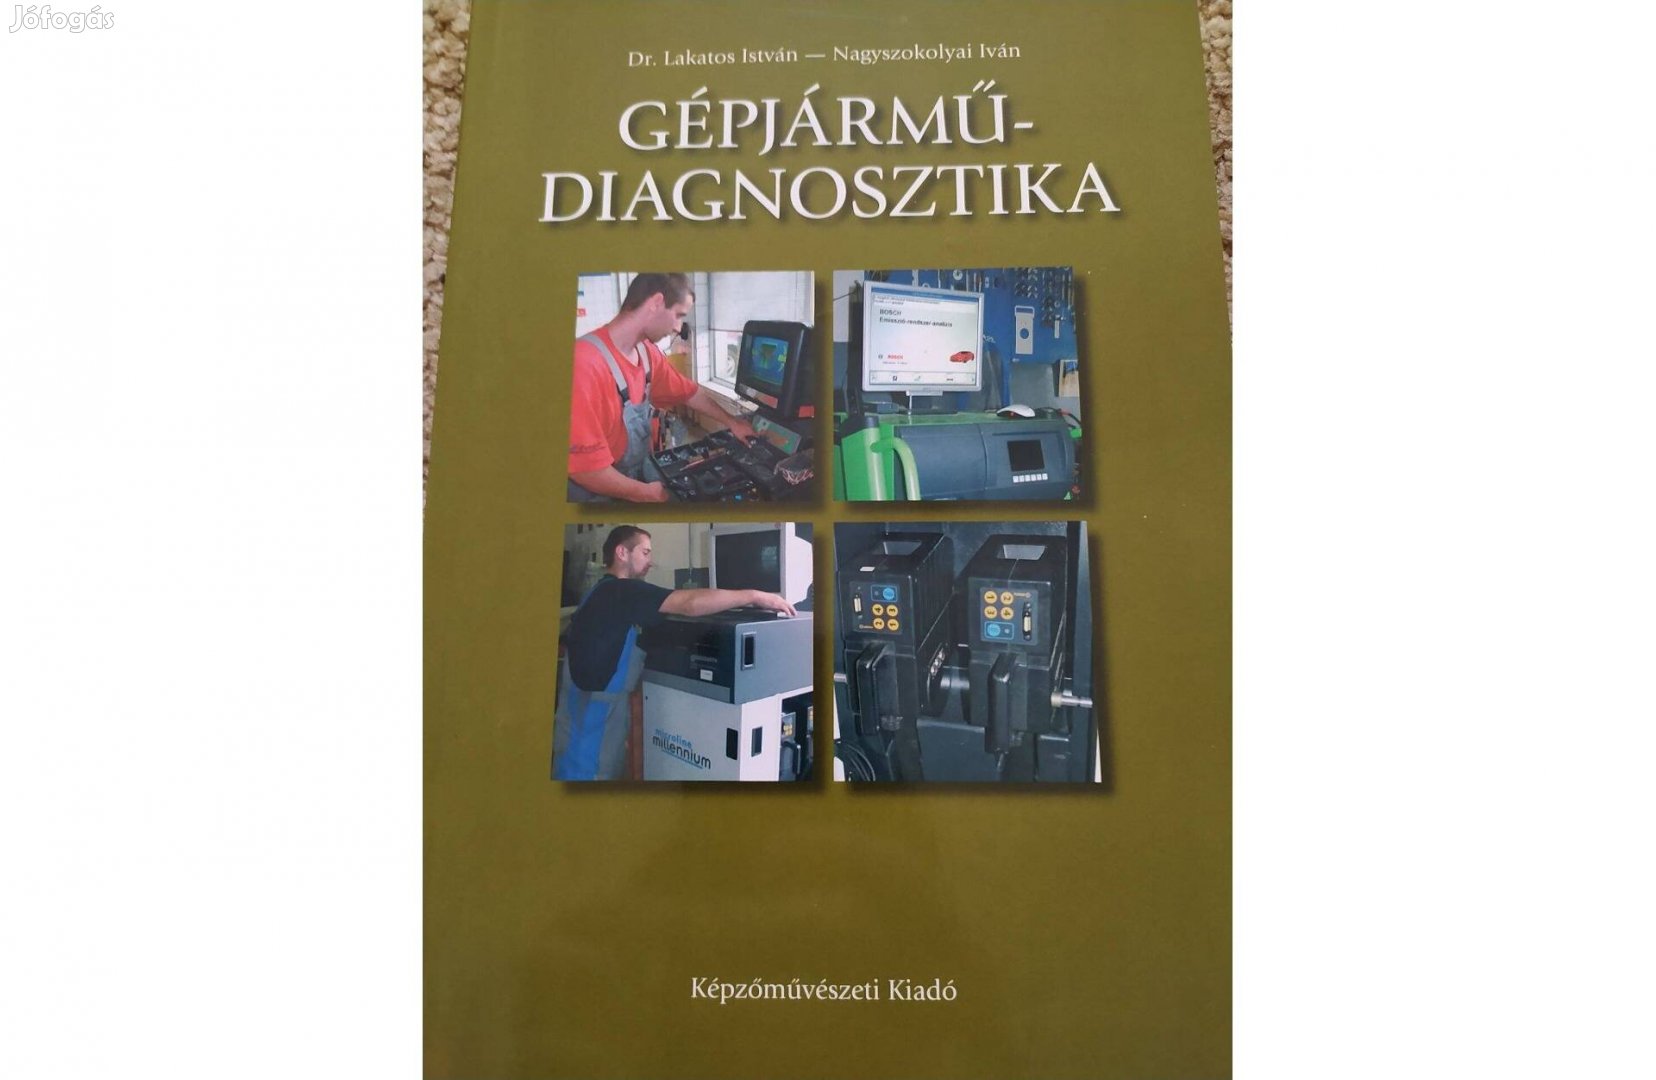 Gépjármű diagnosztika könyv